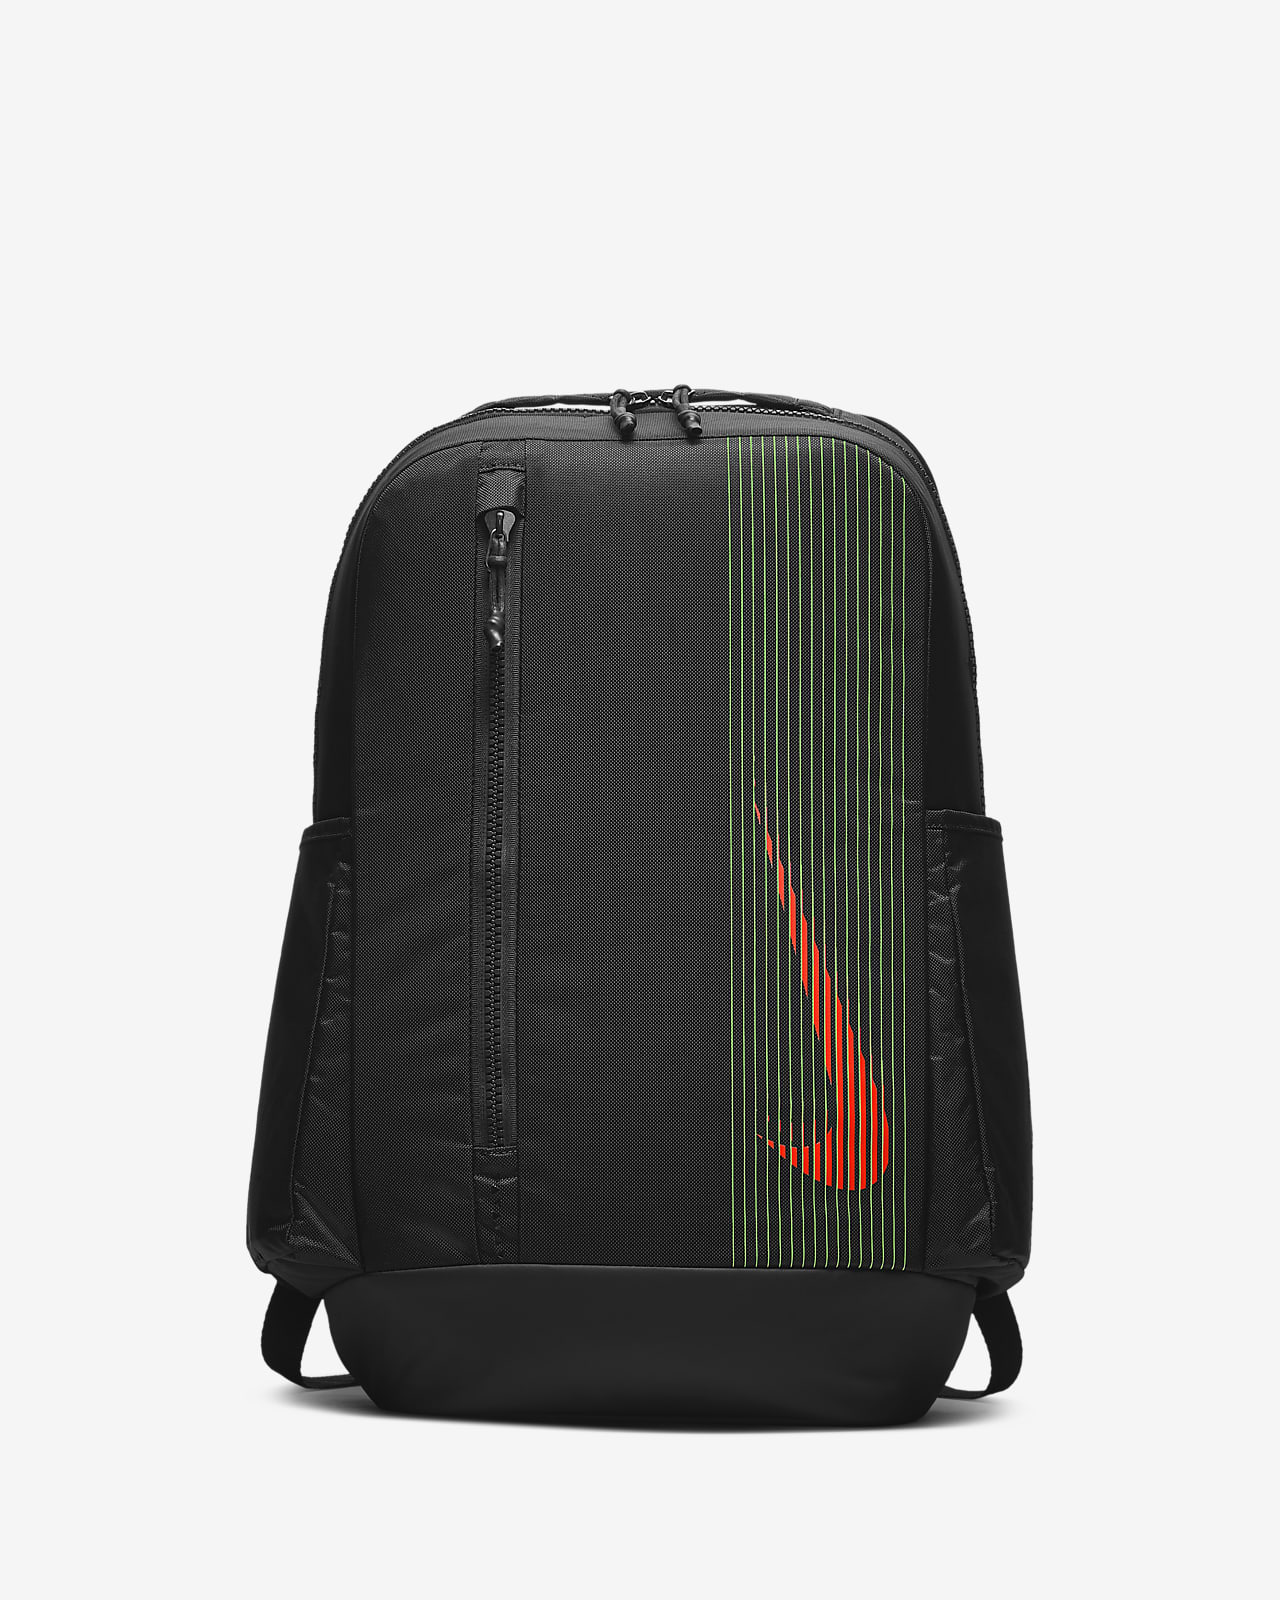 nike power backpack